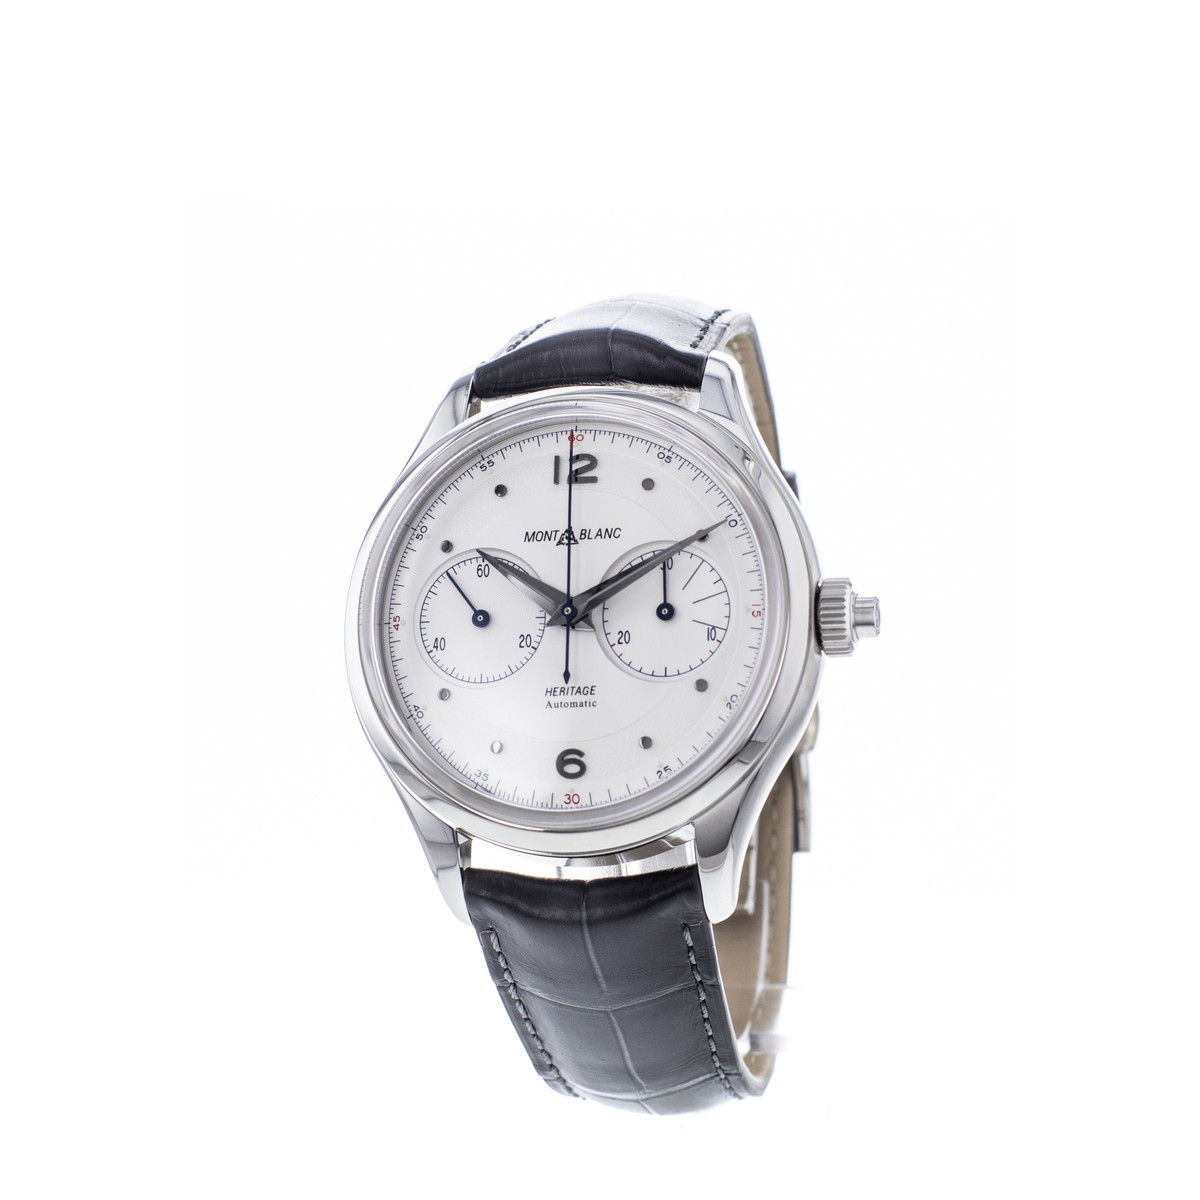 Montre d'occasion Montblanc Heritage homme chronographe automatique acier bracelet cuir noir - vue D1